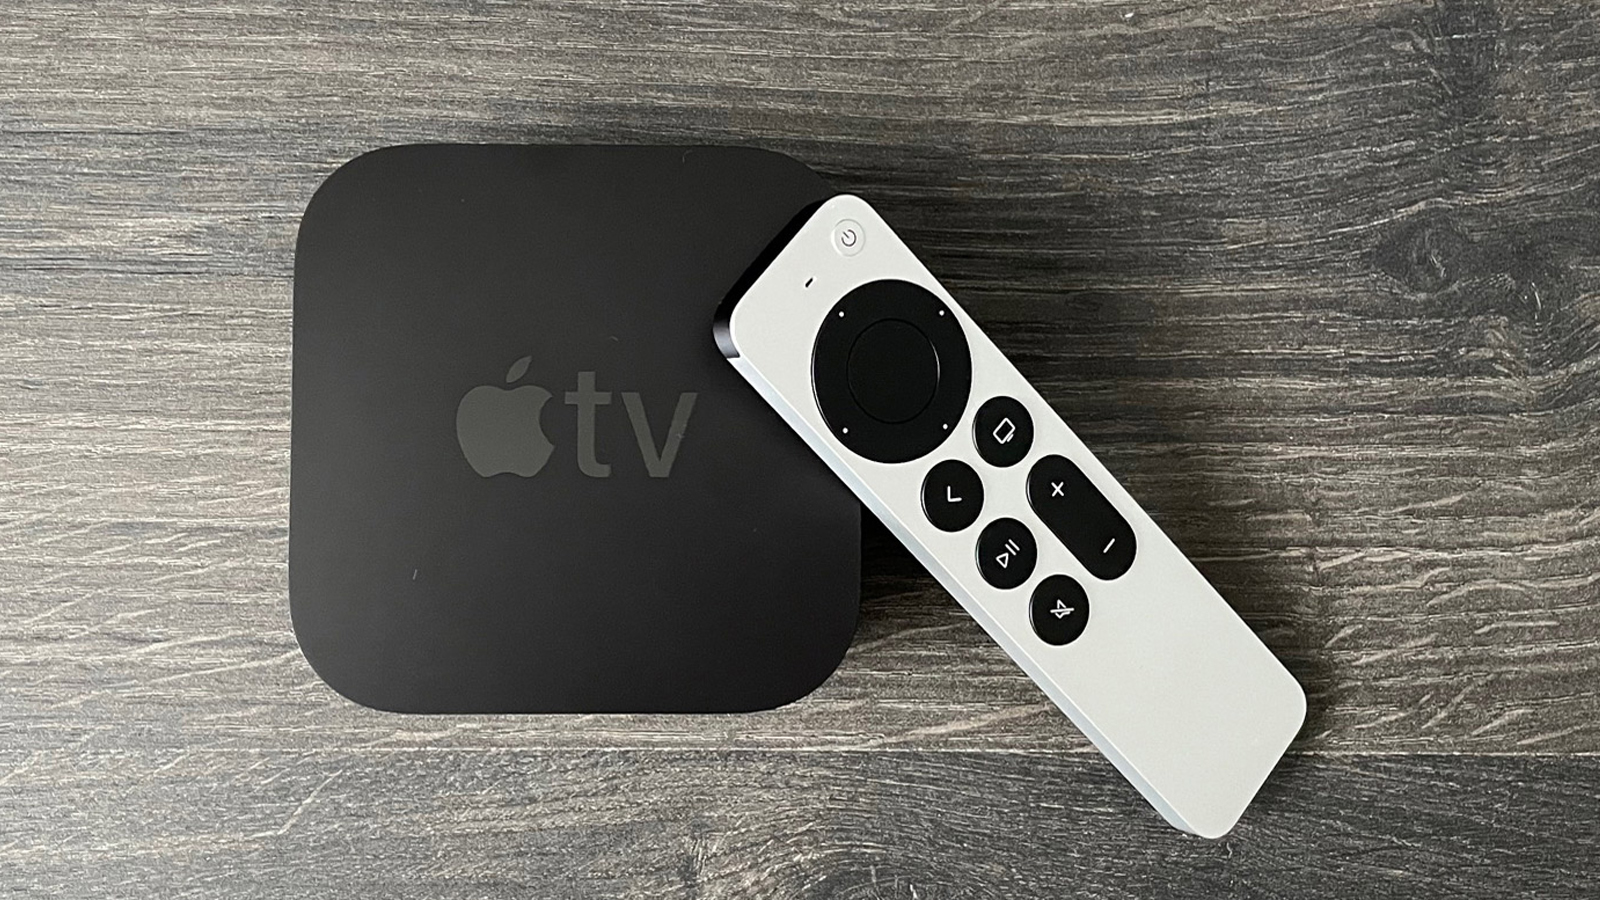 Se rumorea que un Apple TV más barato se lanzará a finales de este año